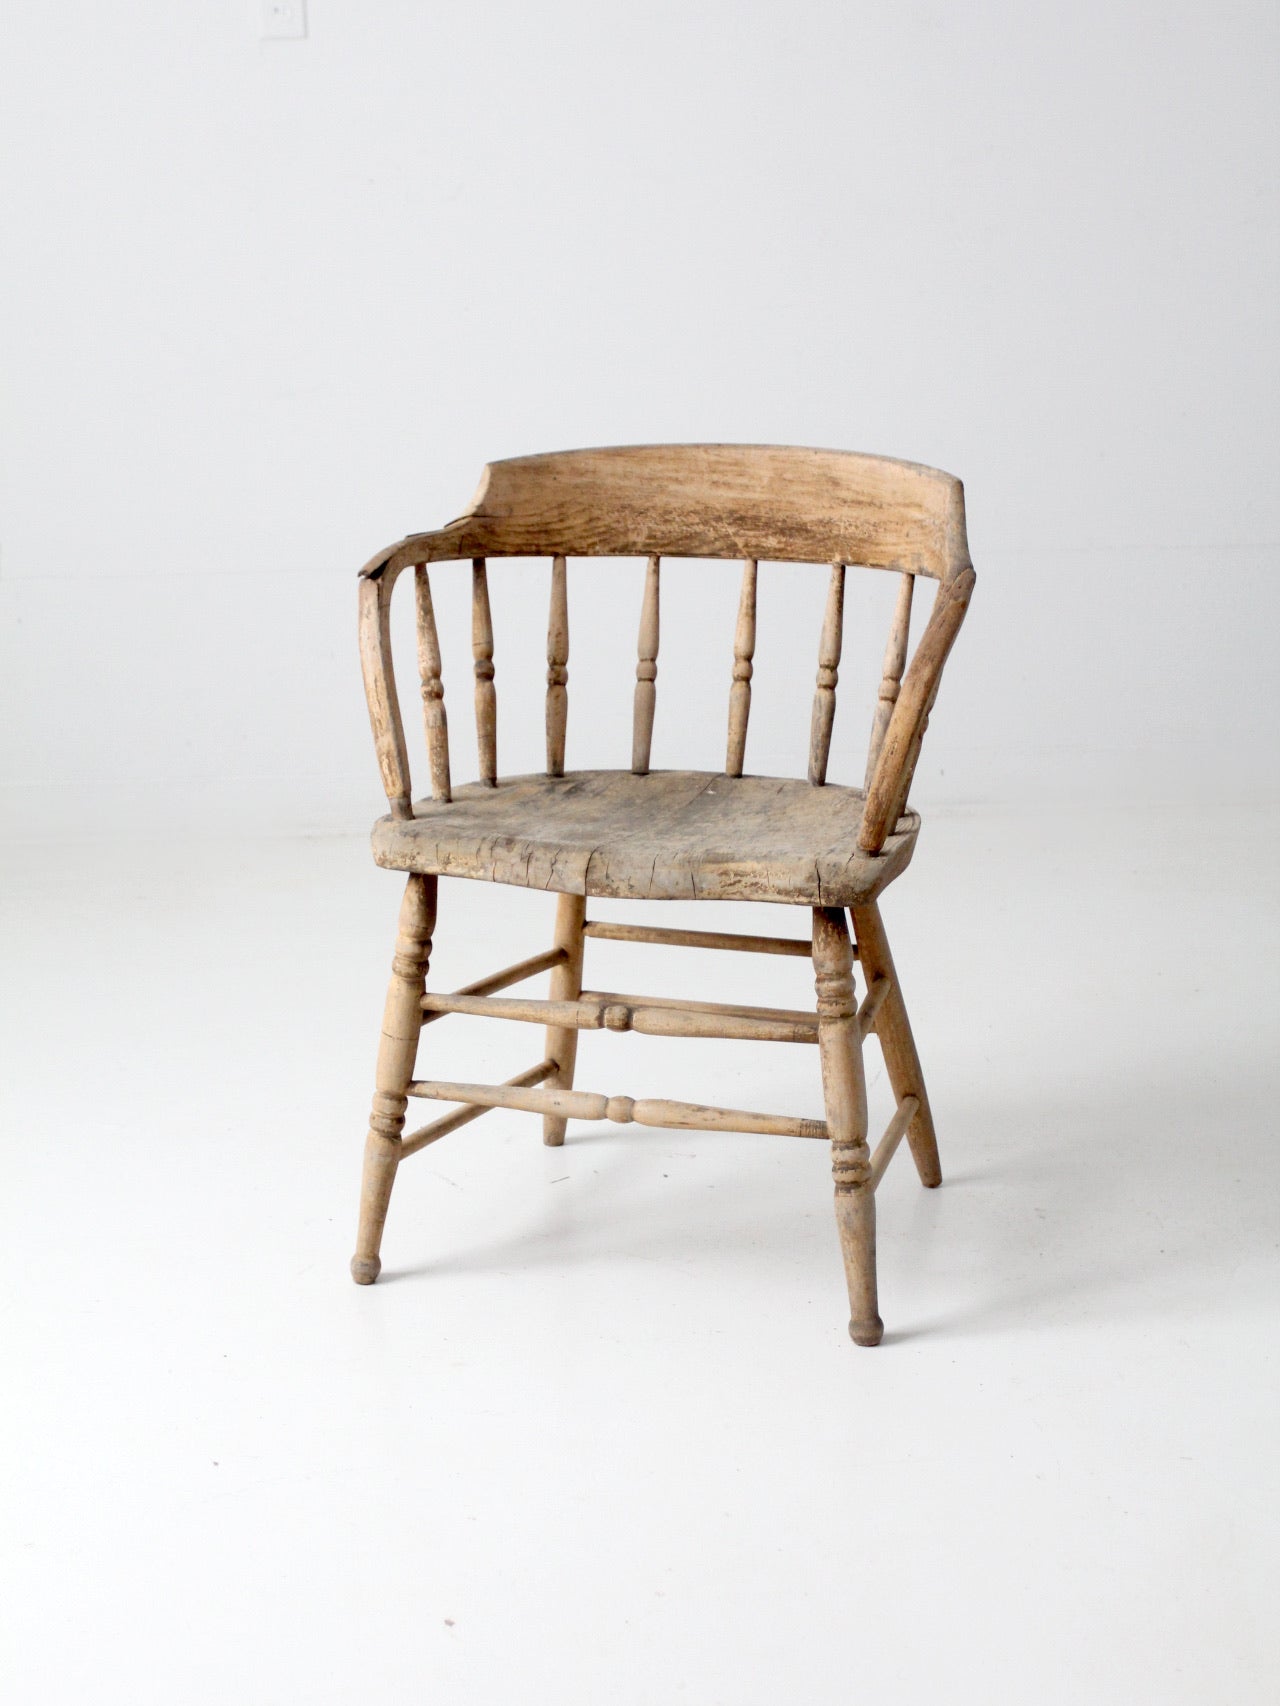 antique rustic captain's chair